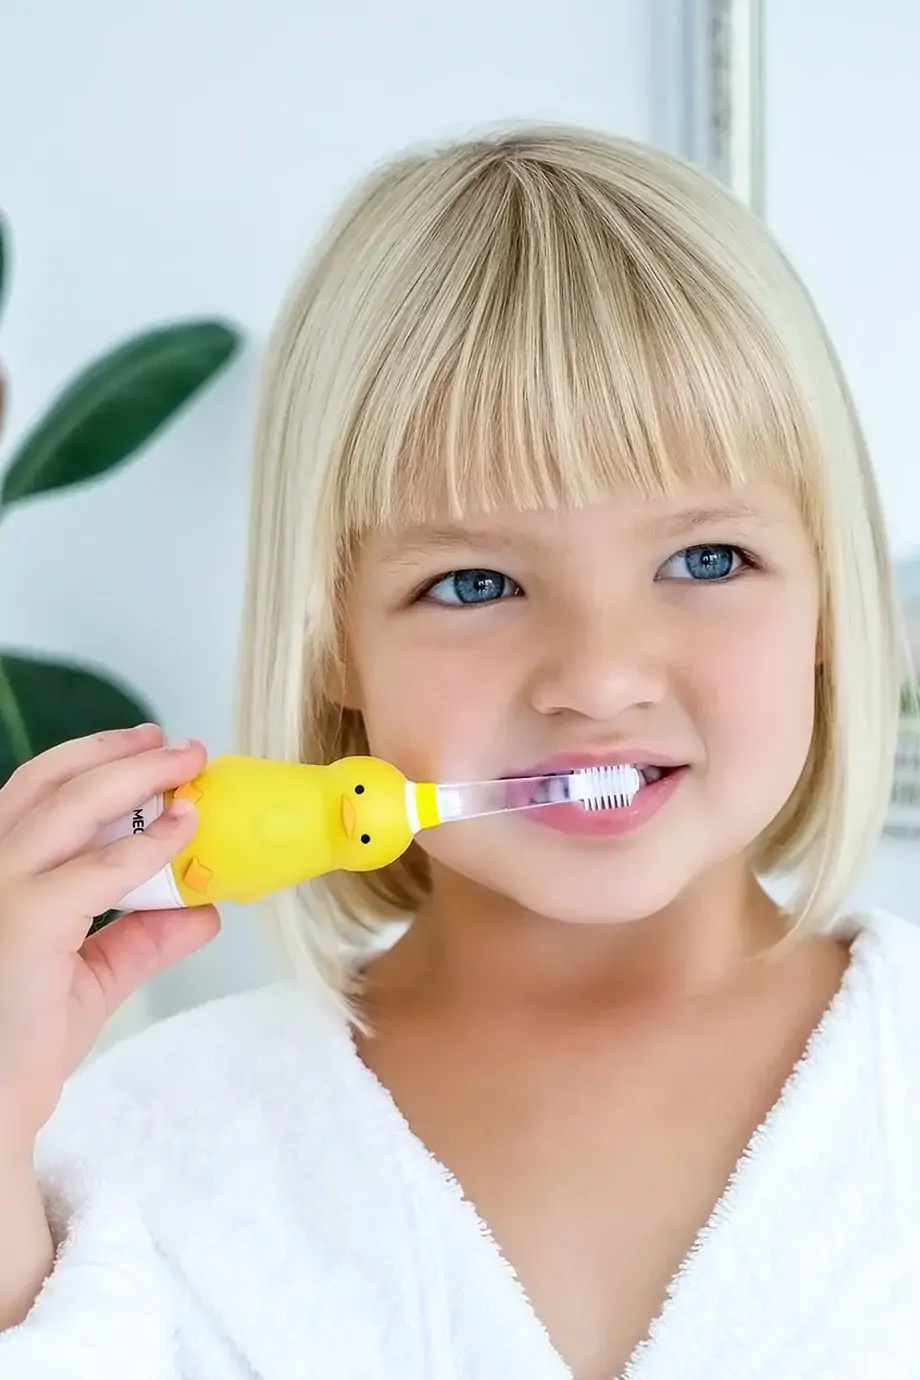 Детская электрическая зубная щетка MEGA TEN KIDS SONIC Утенок в интернет-магазине Authentica.love